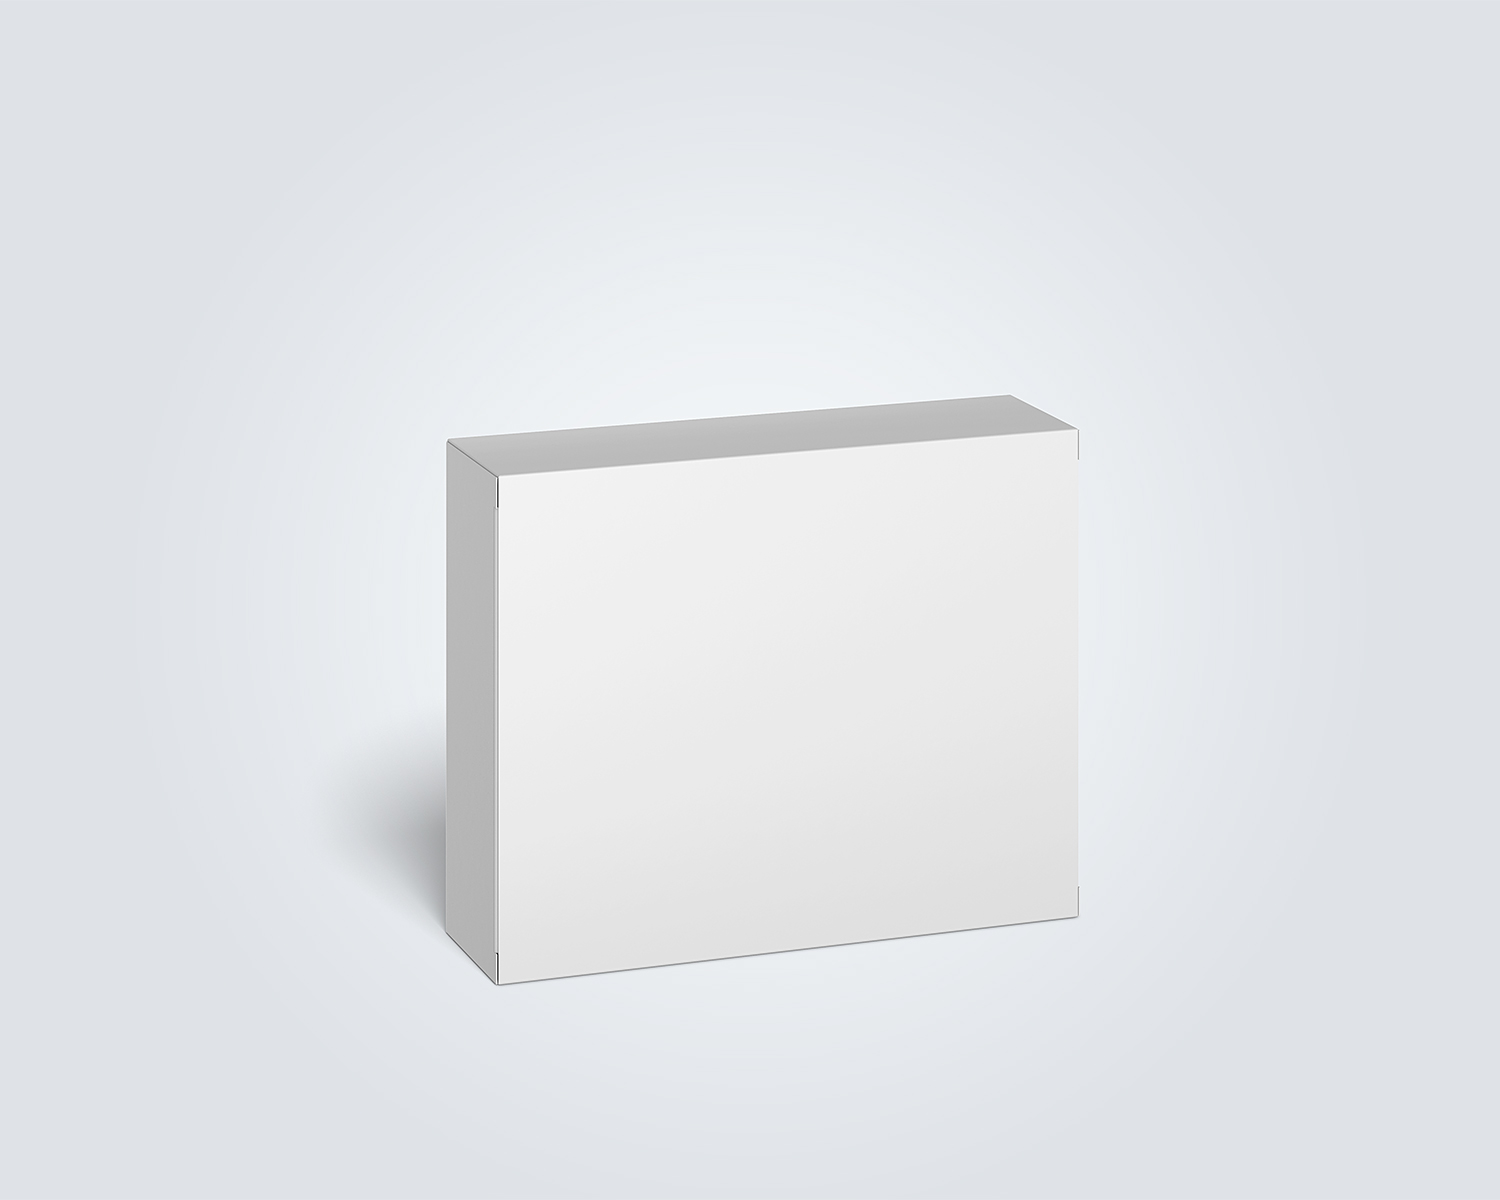 Download Cardboard Box Mockup (100 x 80 x 28 mm) | Free Mockup